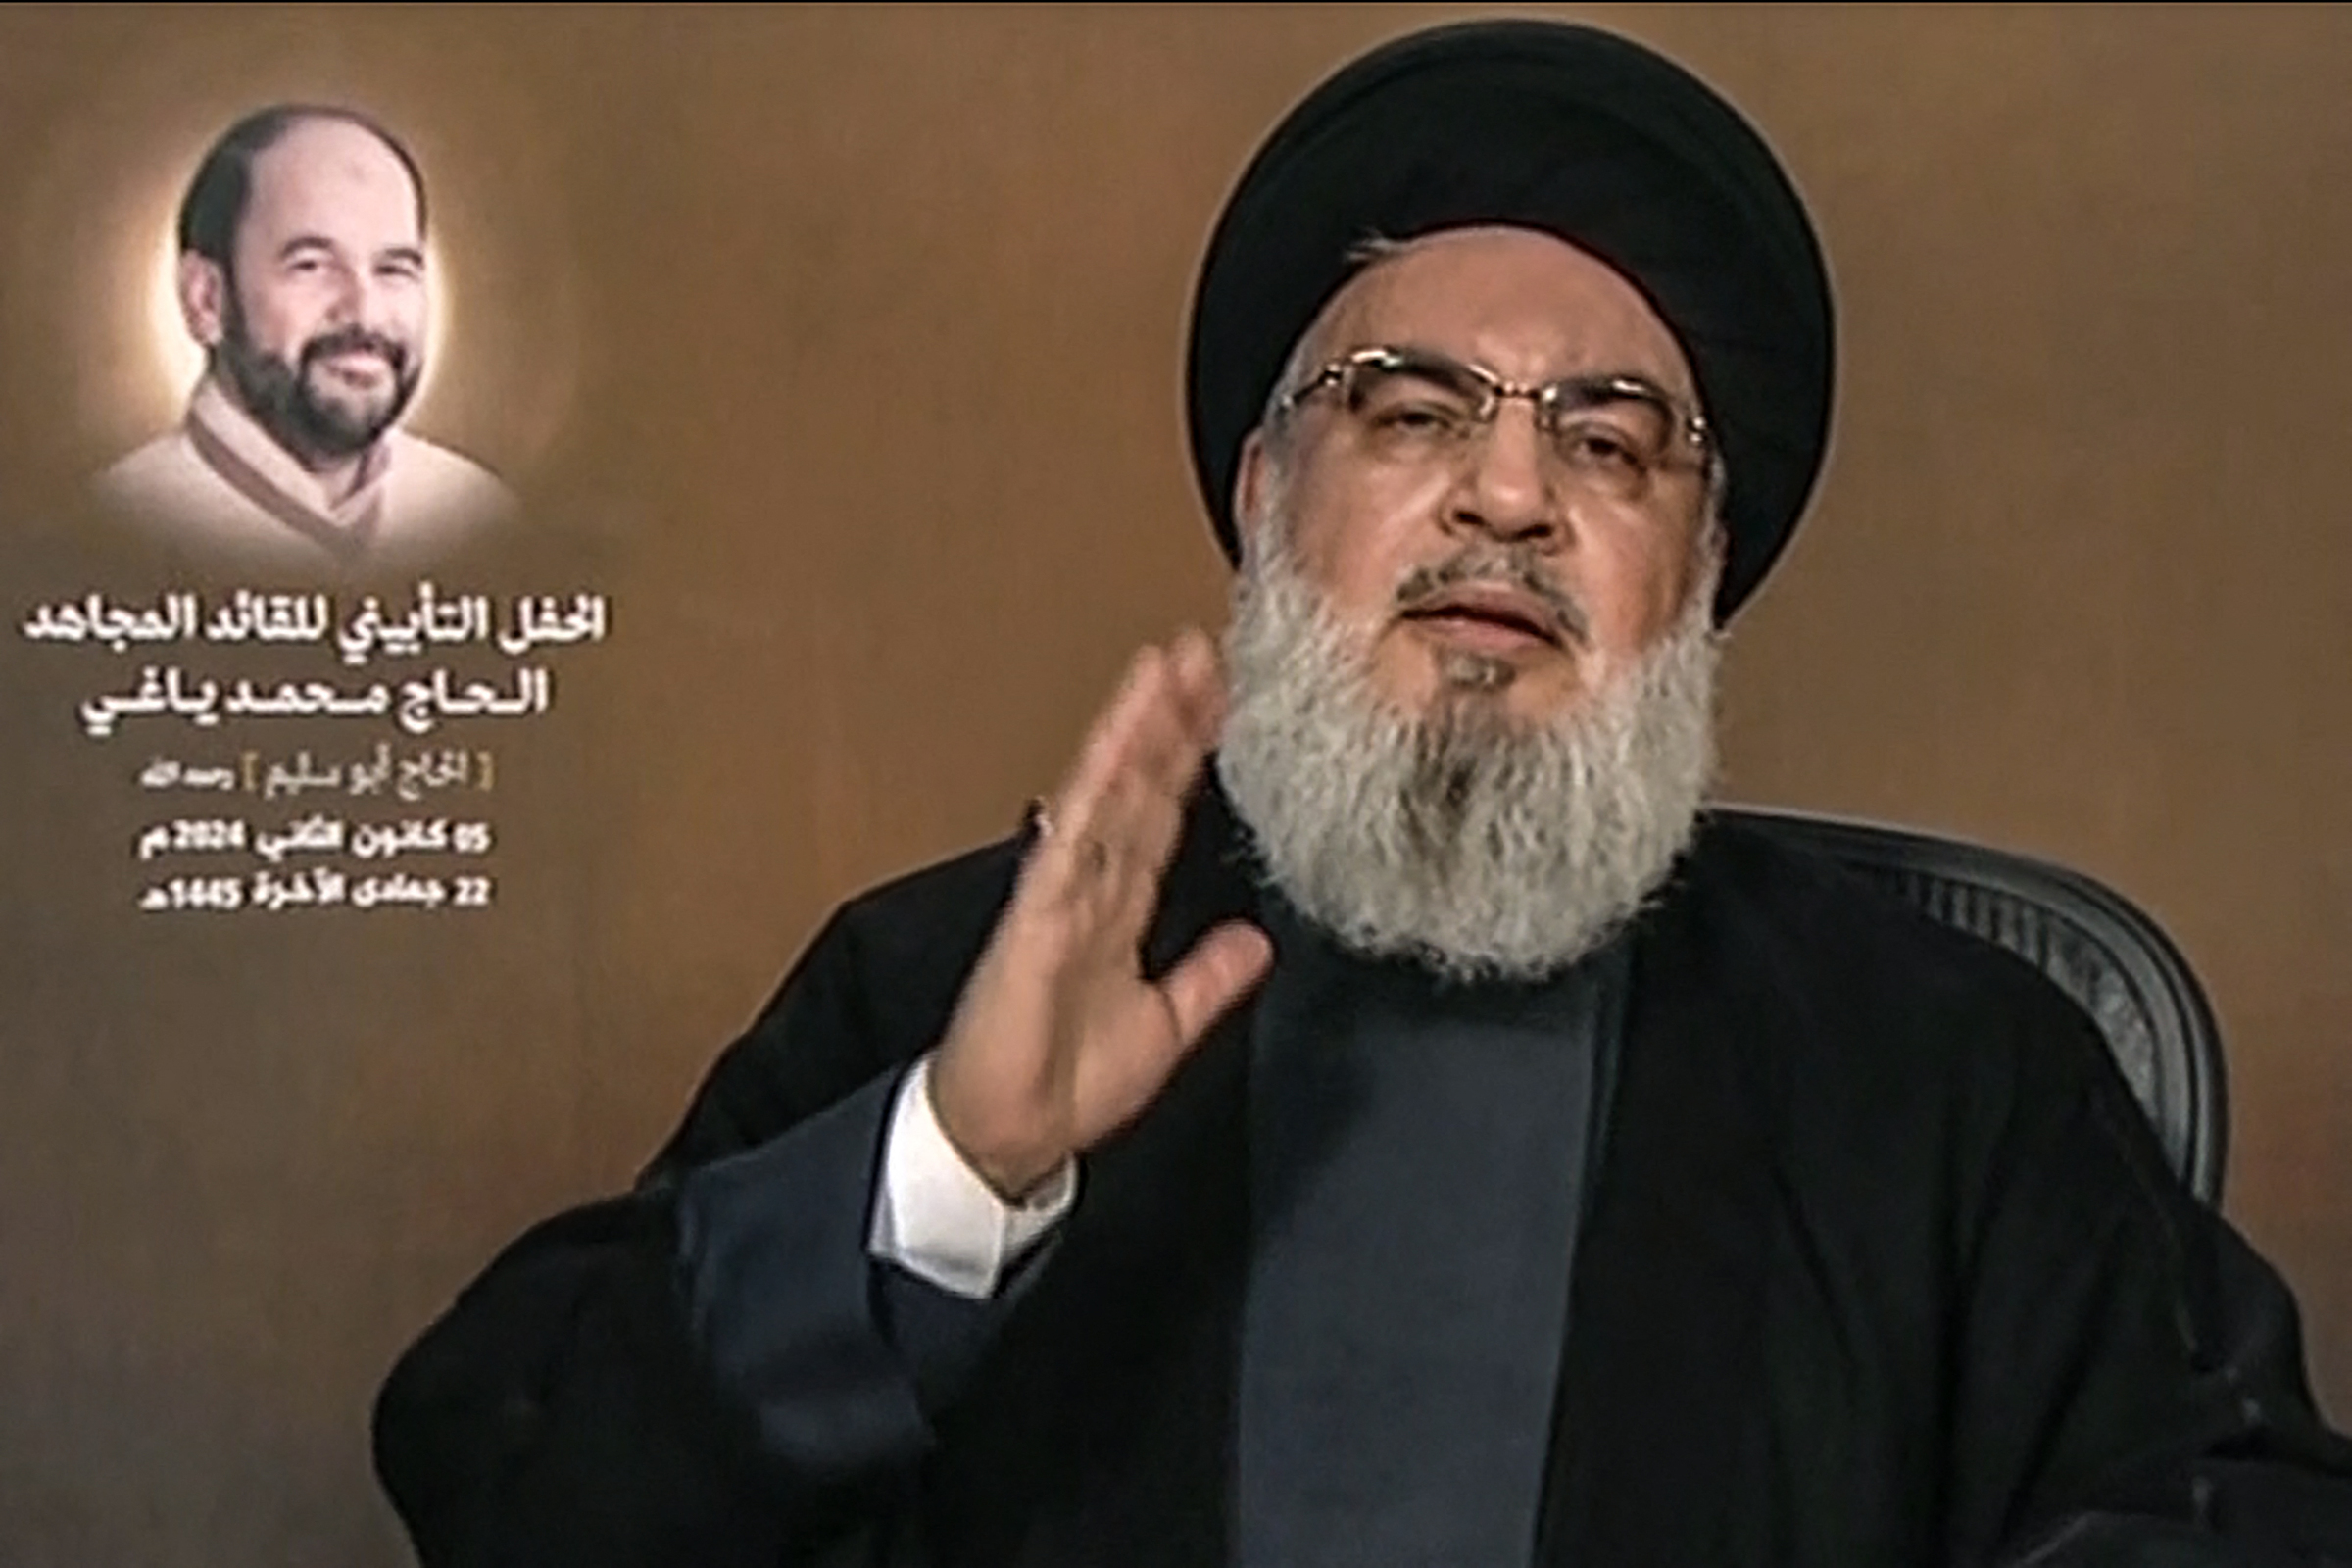 Thủ lĩnh Hezbollah Hassan Nasrallah phát biểu trên truyền hình Lebanon ngày 5/1, cạnh ông là hình ảnh phó lãnh đạo Hamas Saleh al-Arouri. Ảnh: AFP